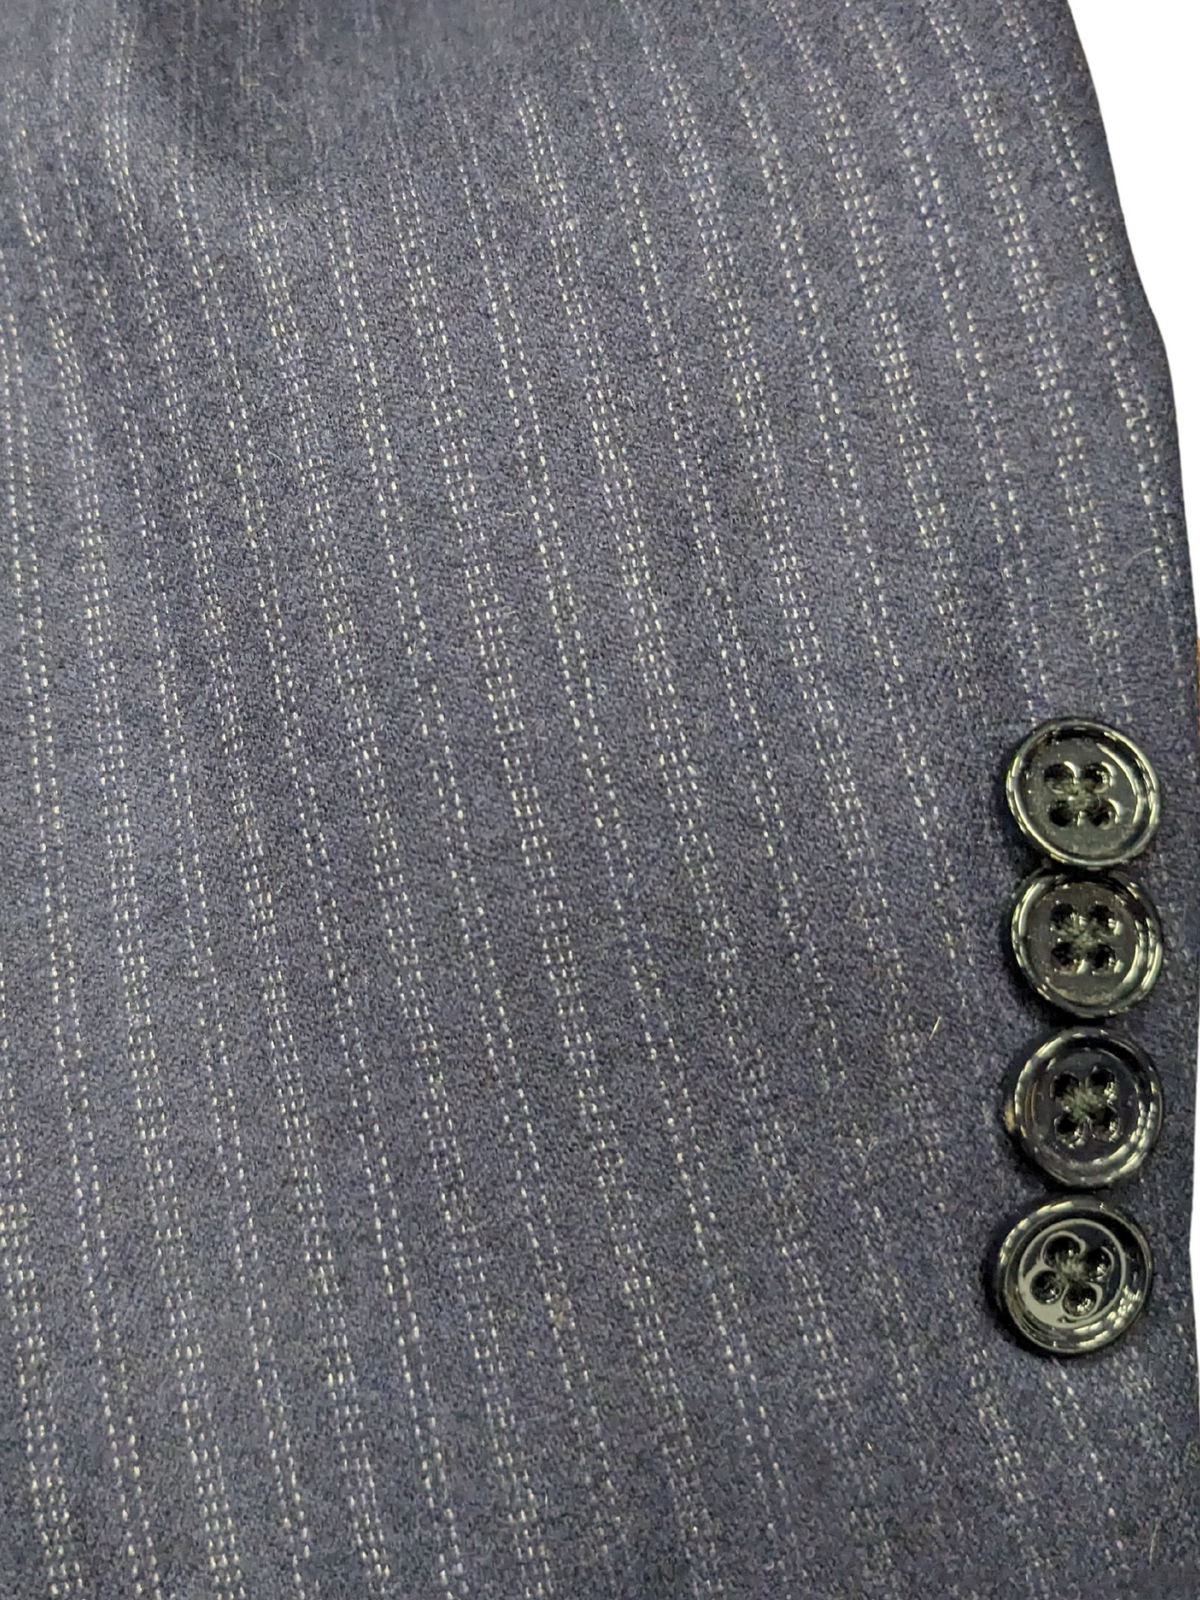 Ralph Lauren Purple Labels Mens 38L Navy Blue Pinstriped 3 Button 100% Wool Suit